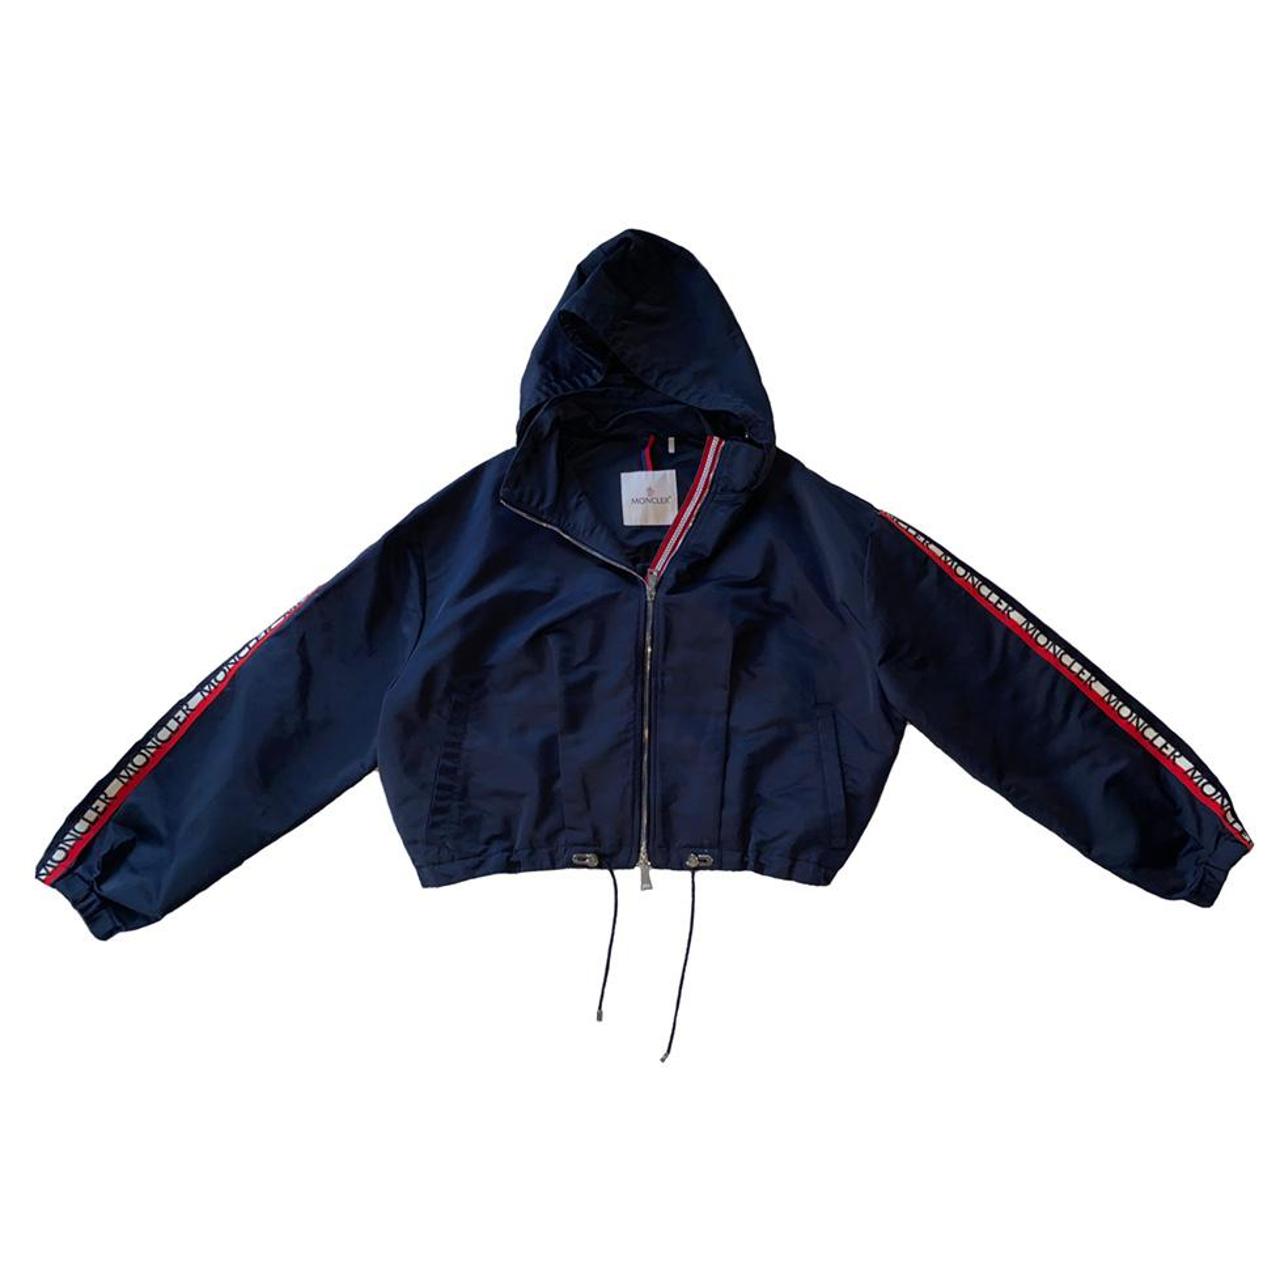 Moncler ‘zirconite’ hooded jacket. Navy windbreaker...